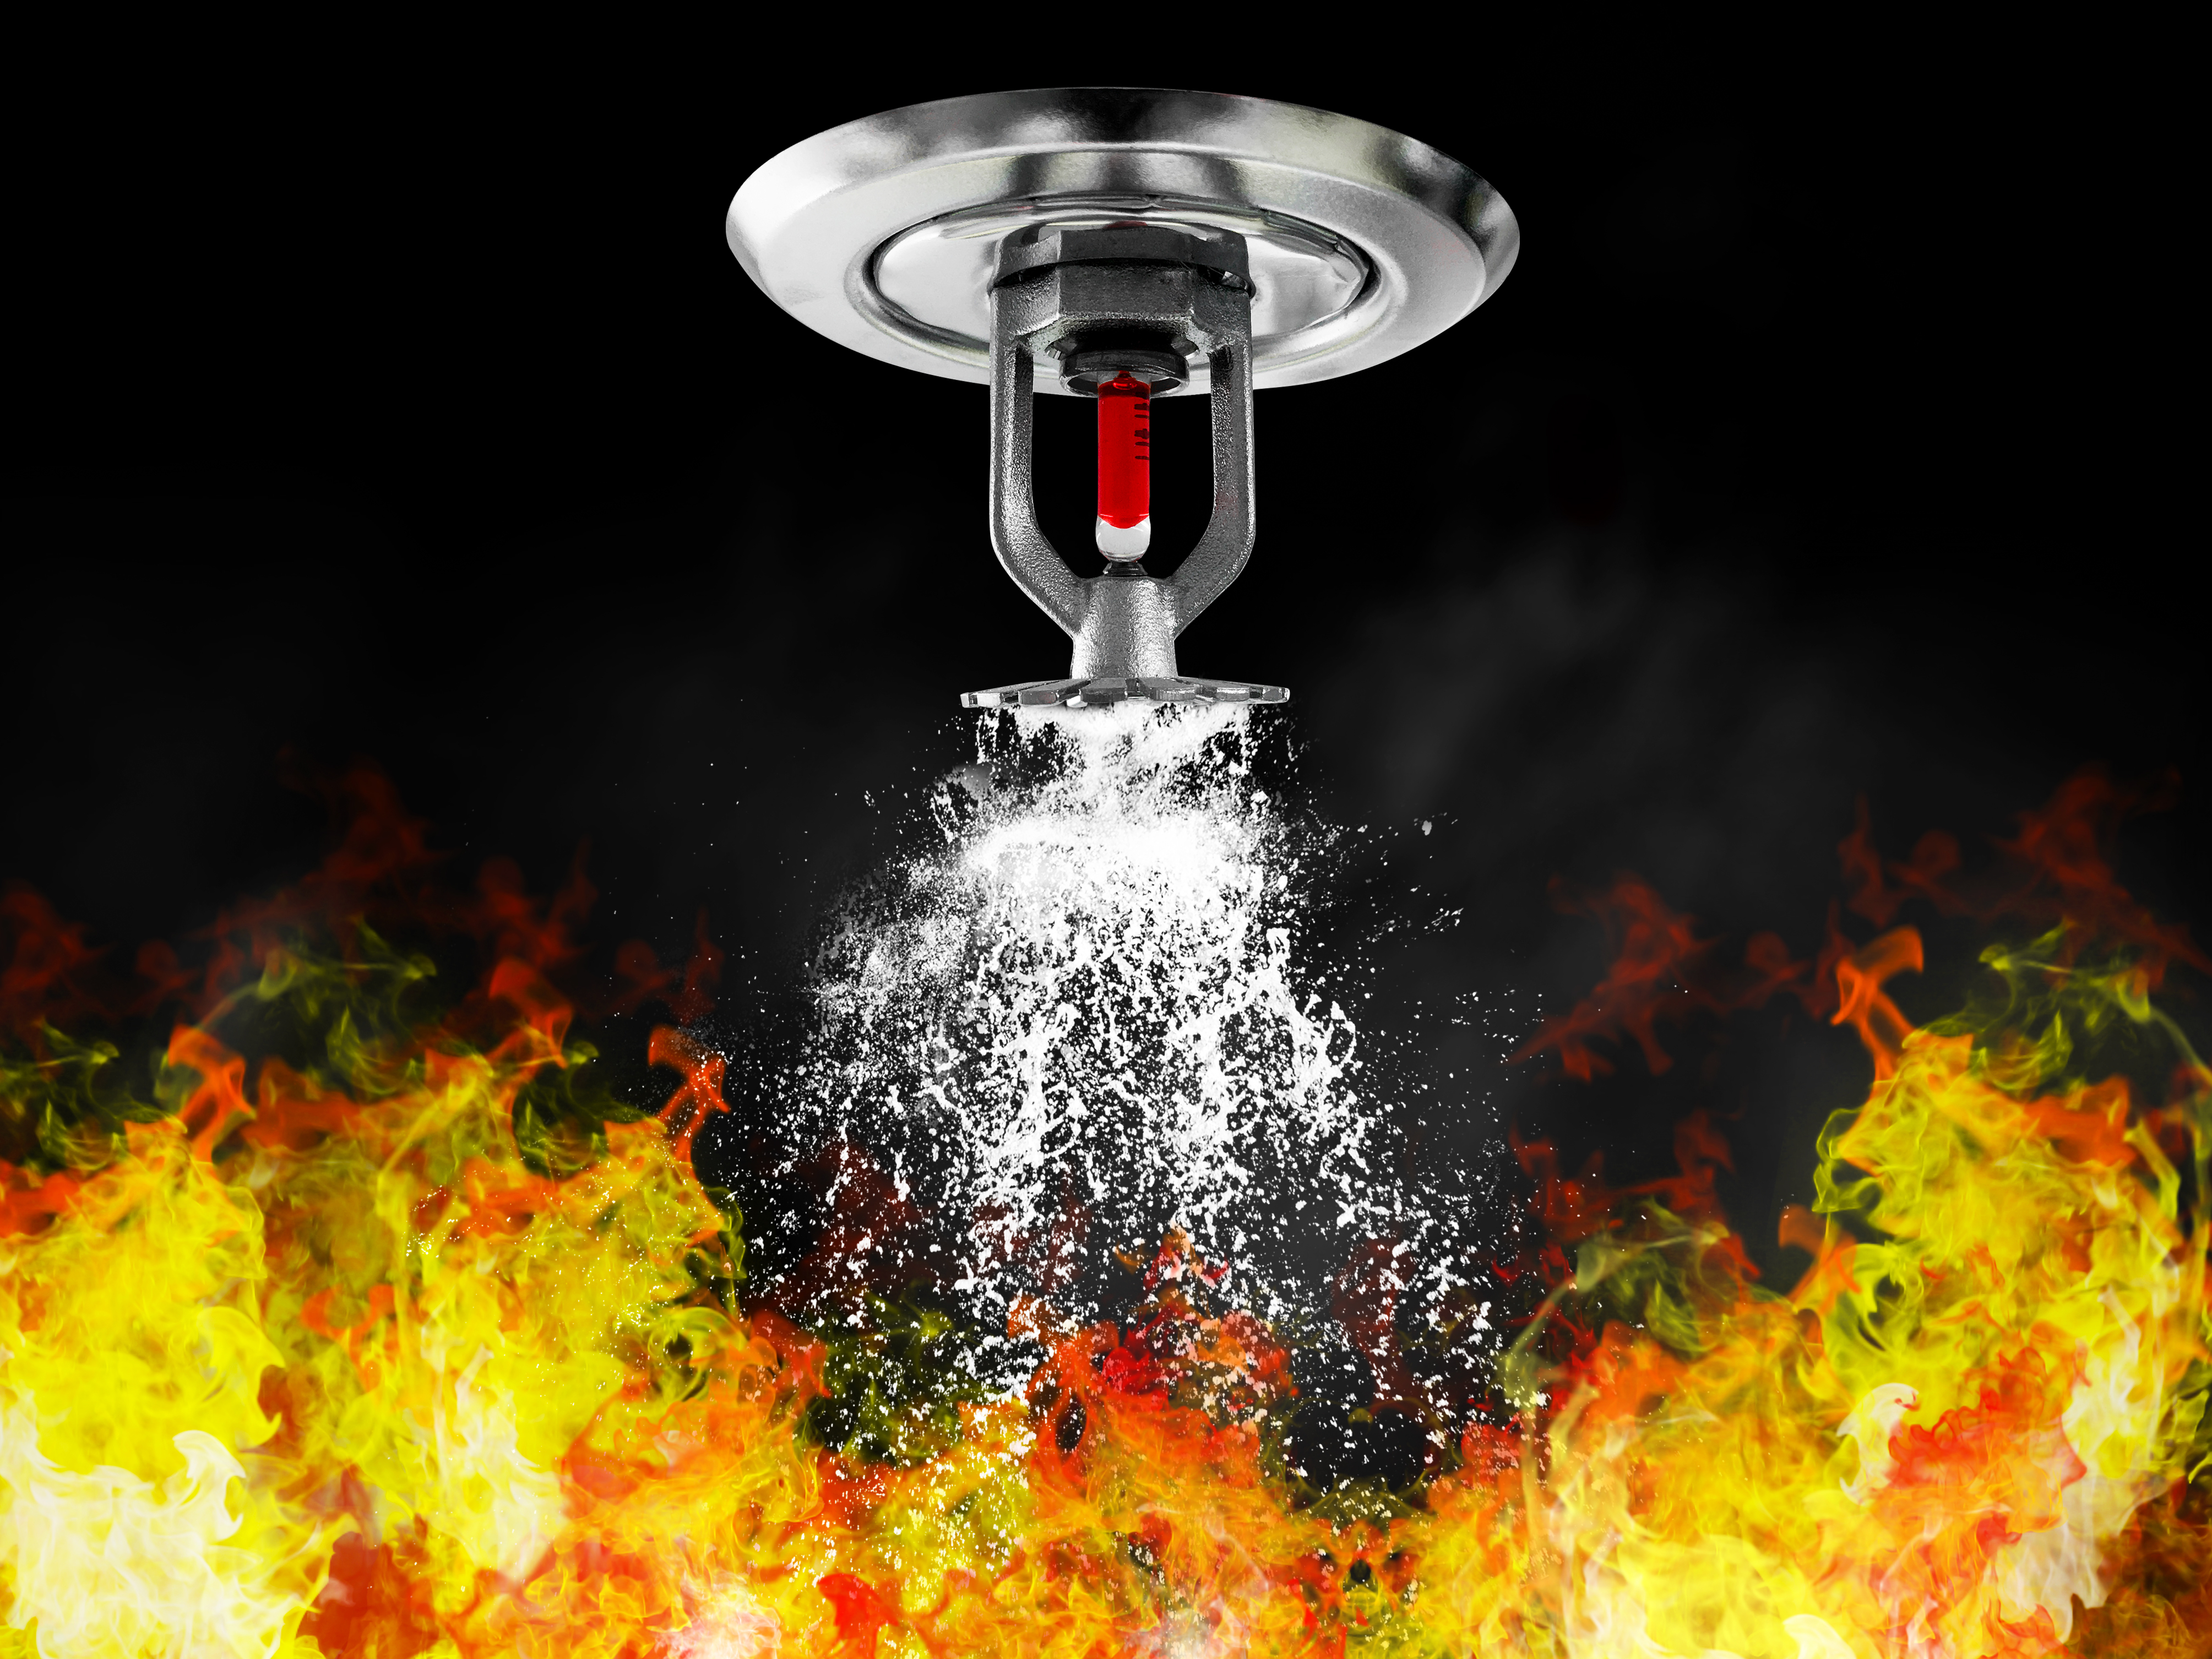 Você sabe o risco que corre ao jogar um copo d'água numa panela em chamas?  - Skop Sprinklers